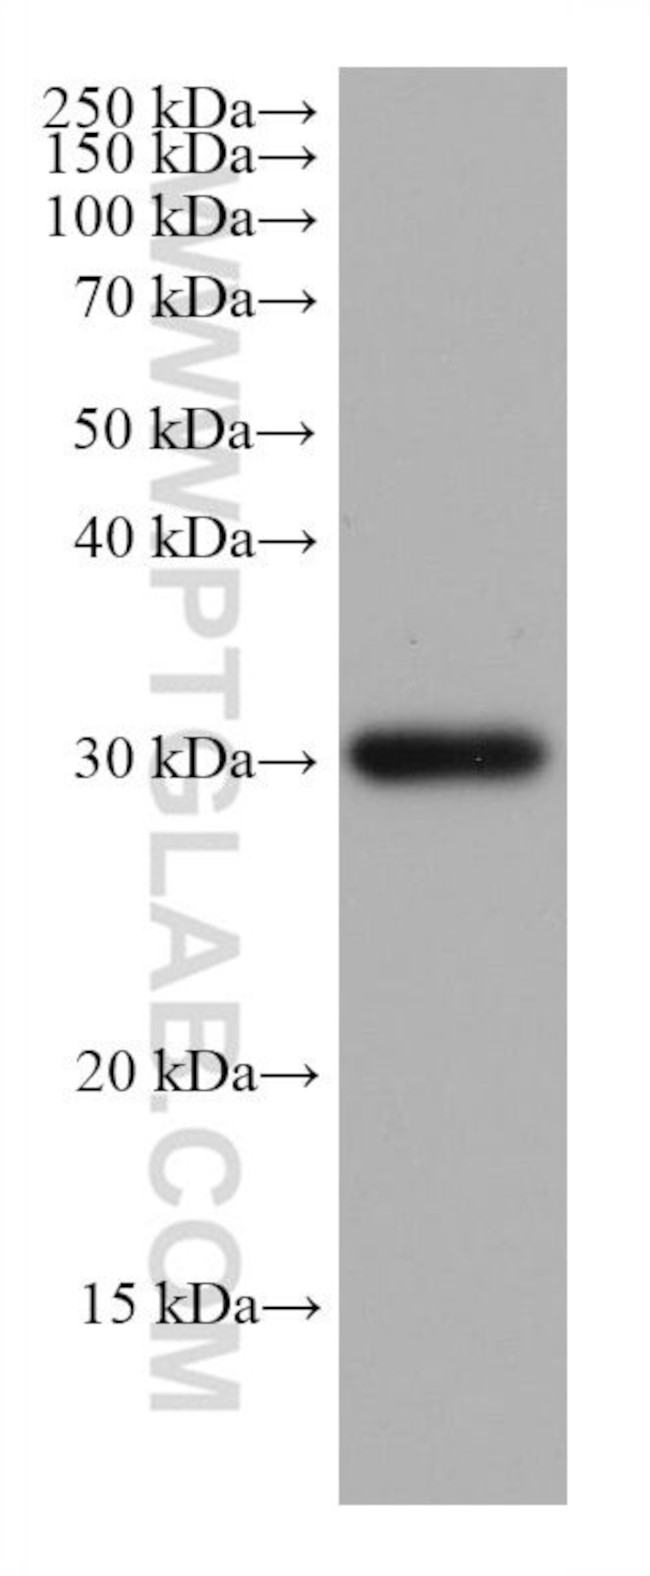 NDUFS3 Antibody in Western Blot (WB)